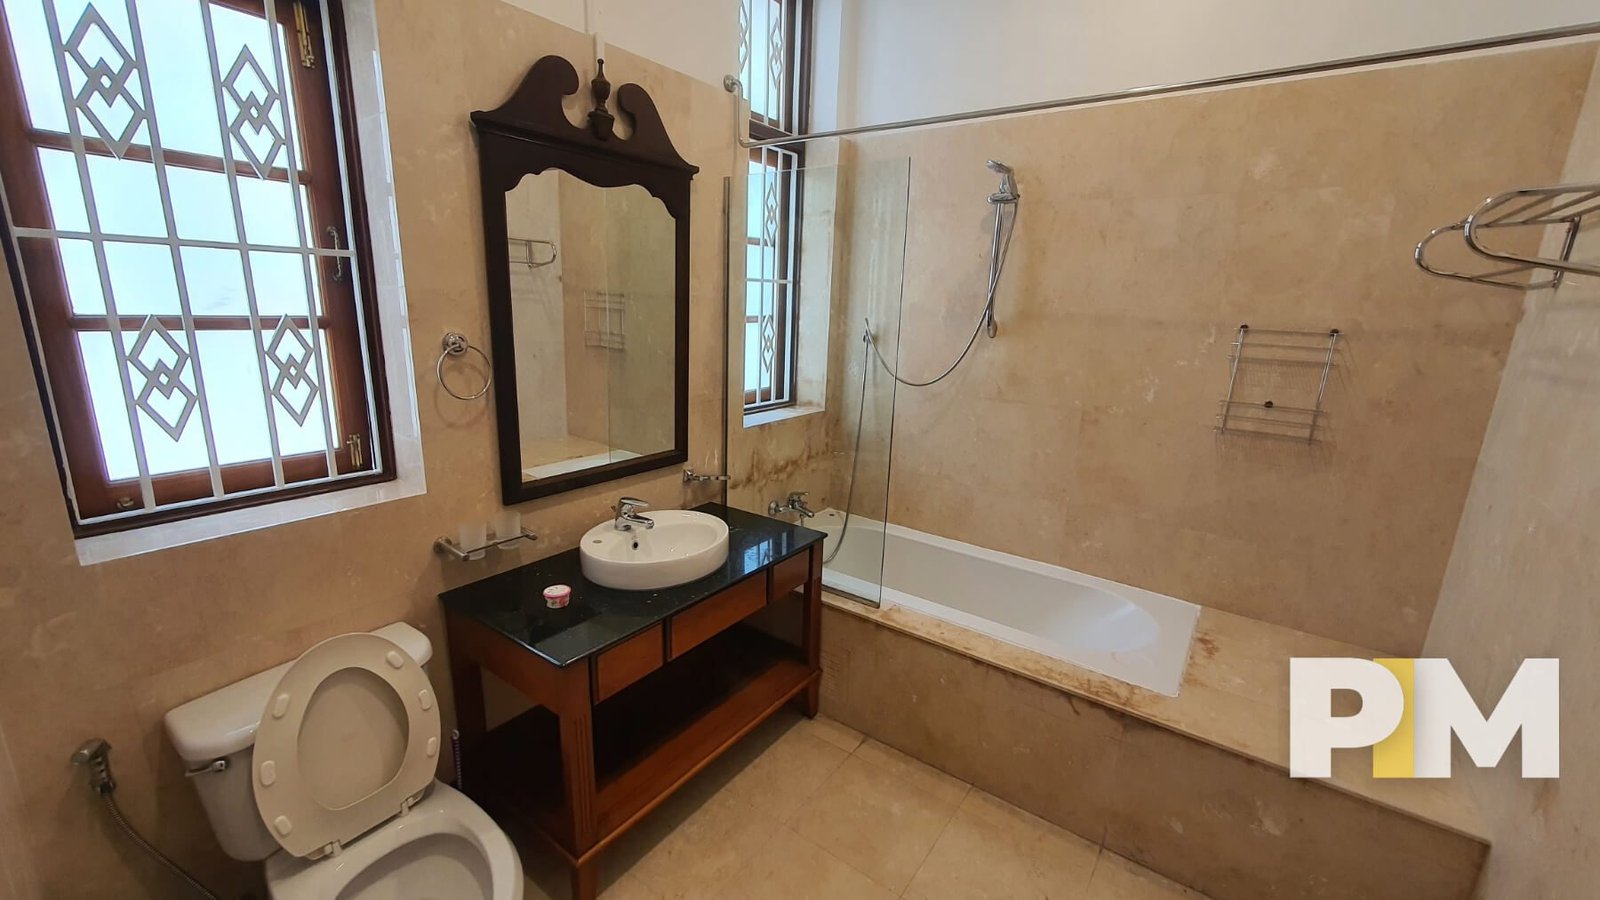 Bathroom with bathtub - Yangon Real Estate